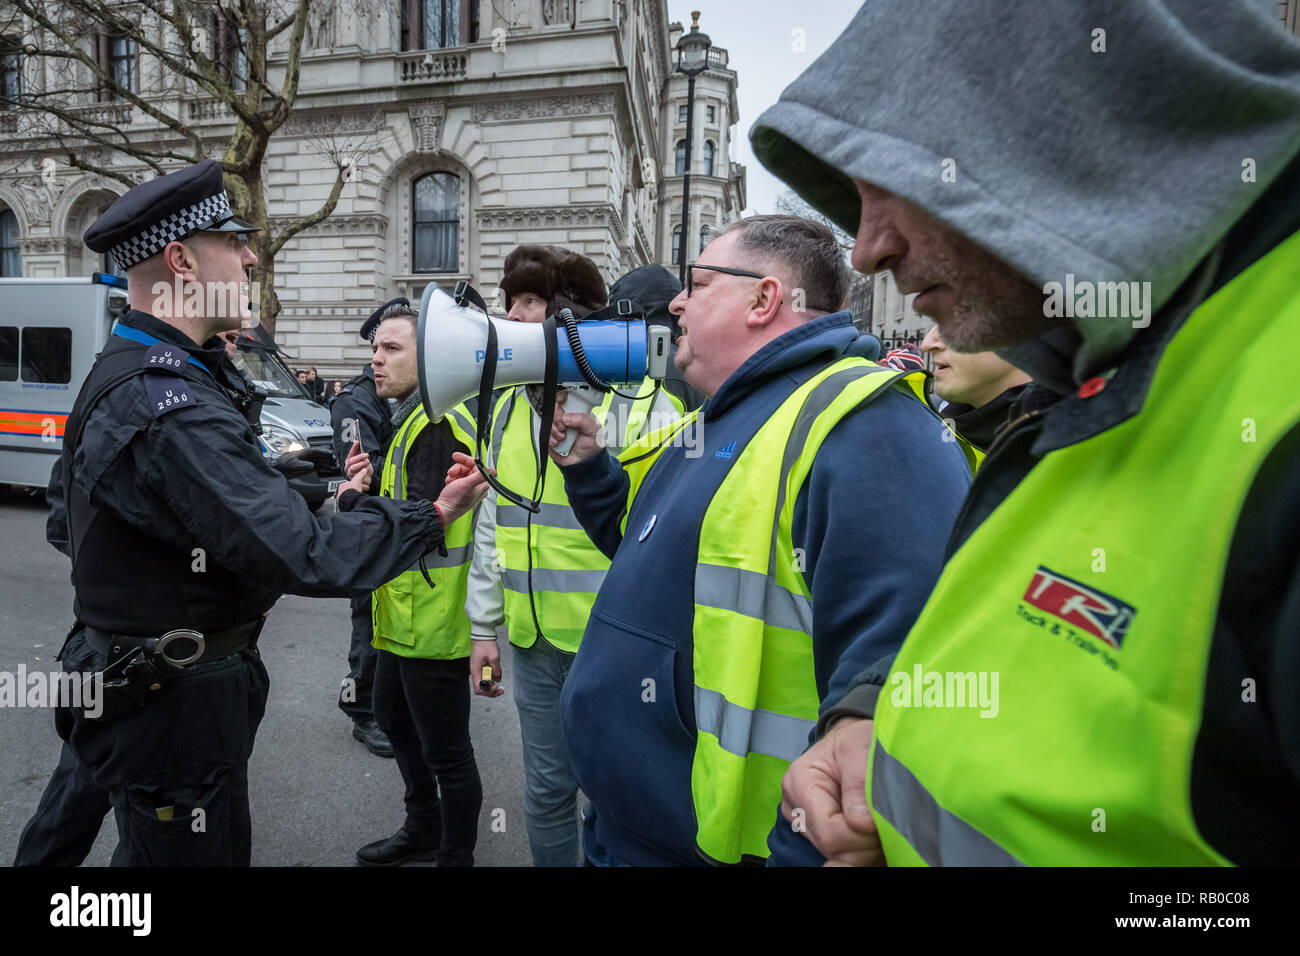 Londres, Royaume-Uni. 5 janvier 2019. Pro-Brexit se fait appeler les manifestants jaune 'UK' circulation bloquer les routes et de la circulation, à Westminster. Crédit : Guy Josse/Alamy Live News Banque D'Images